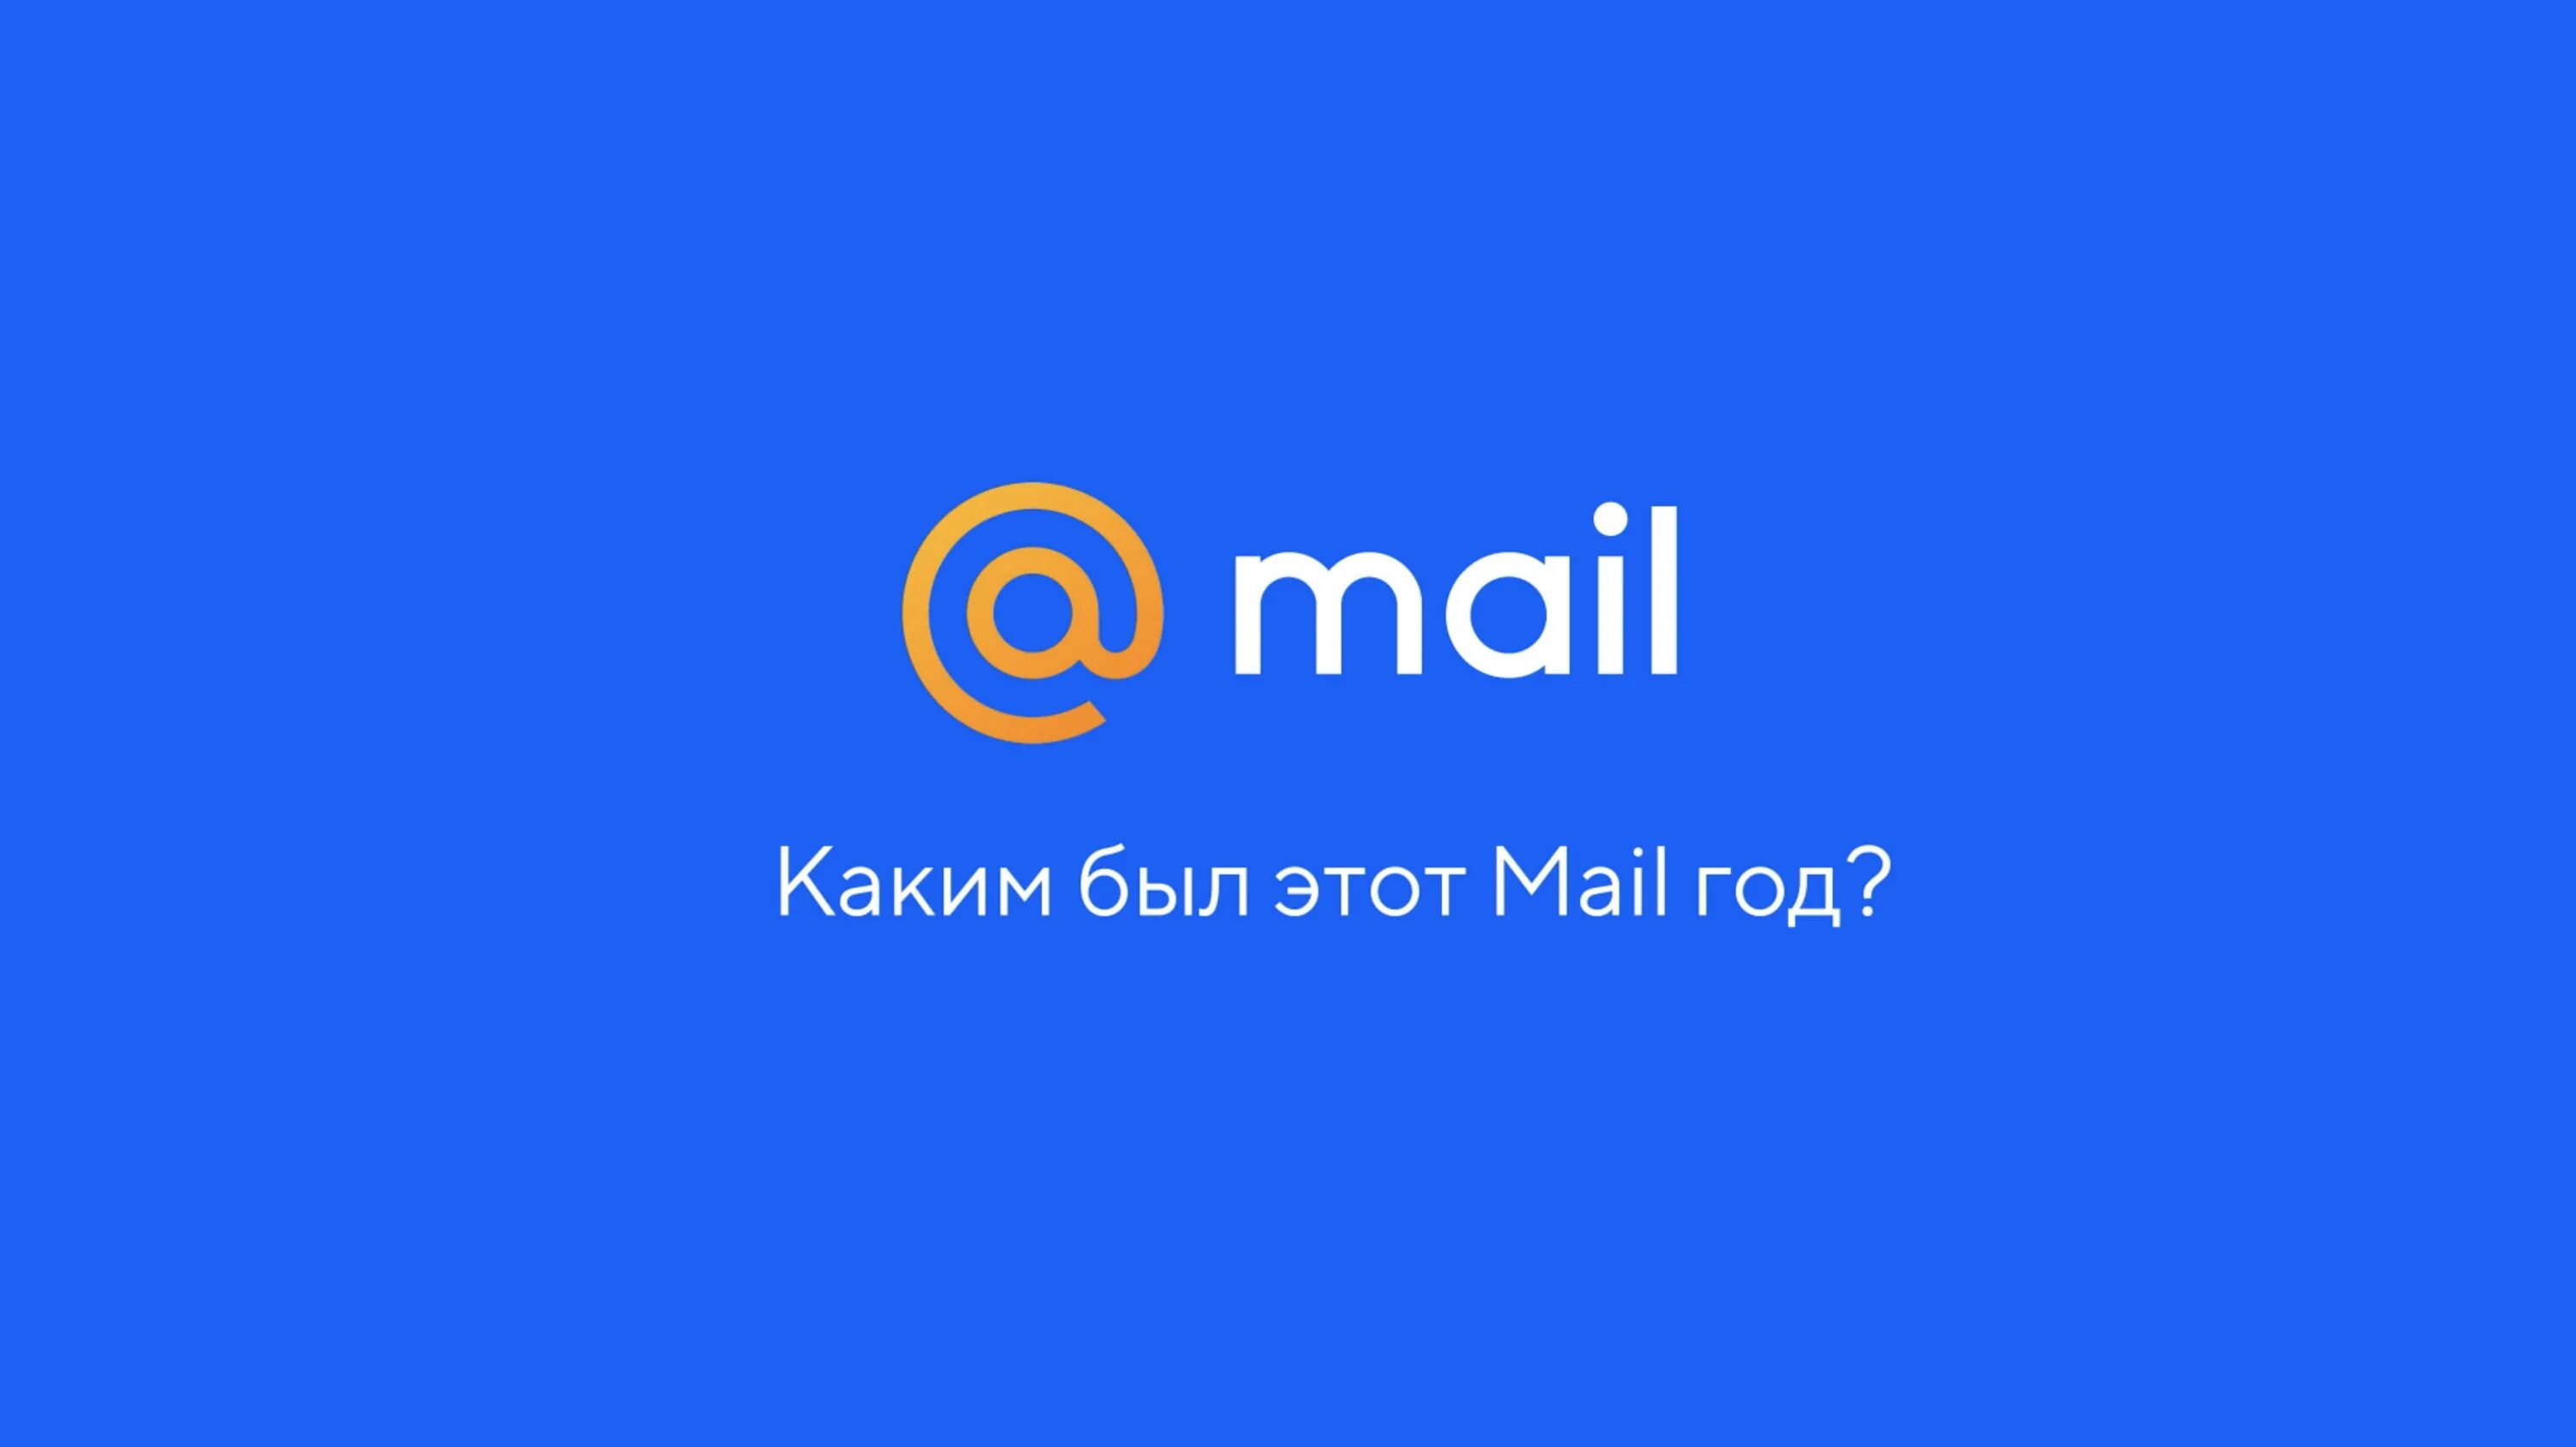 Partners mail ru. Mail. Почта майл. Mia l. Mai ly.